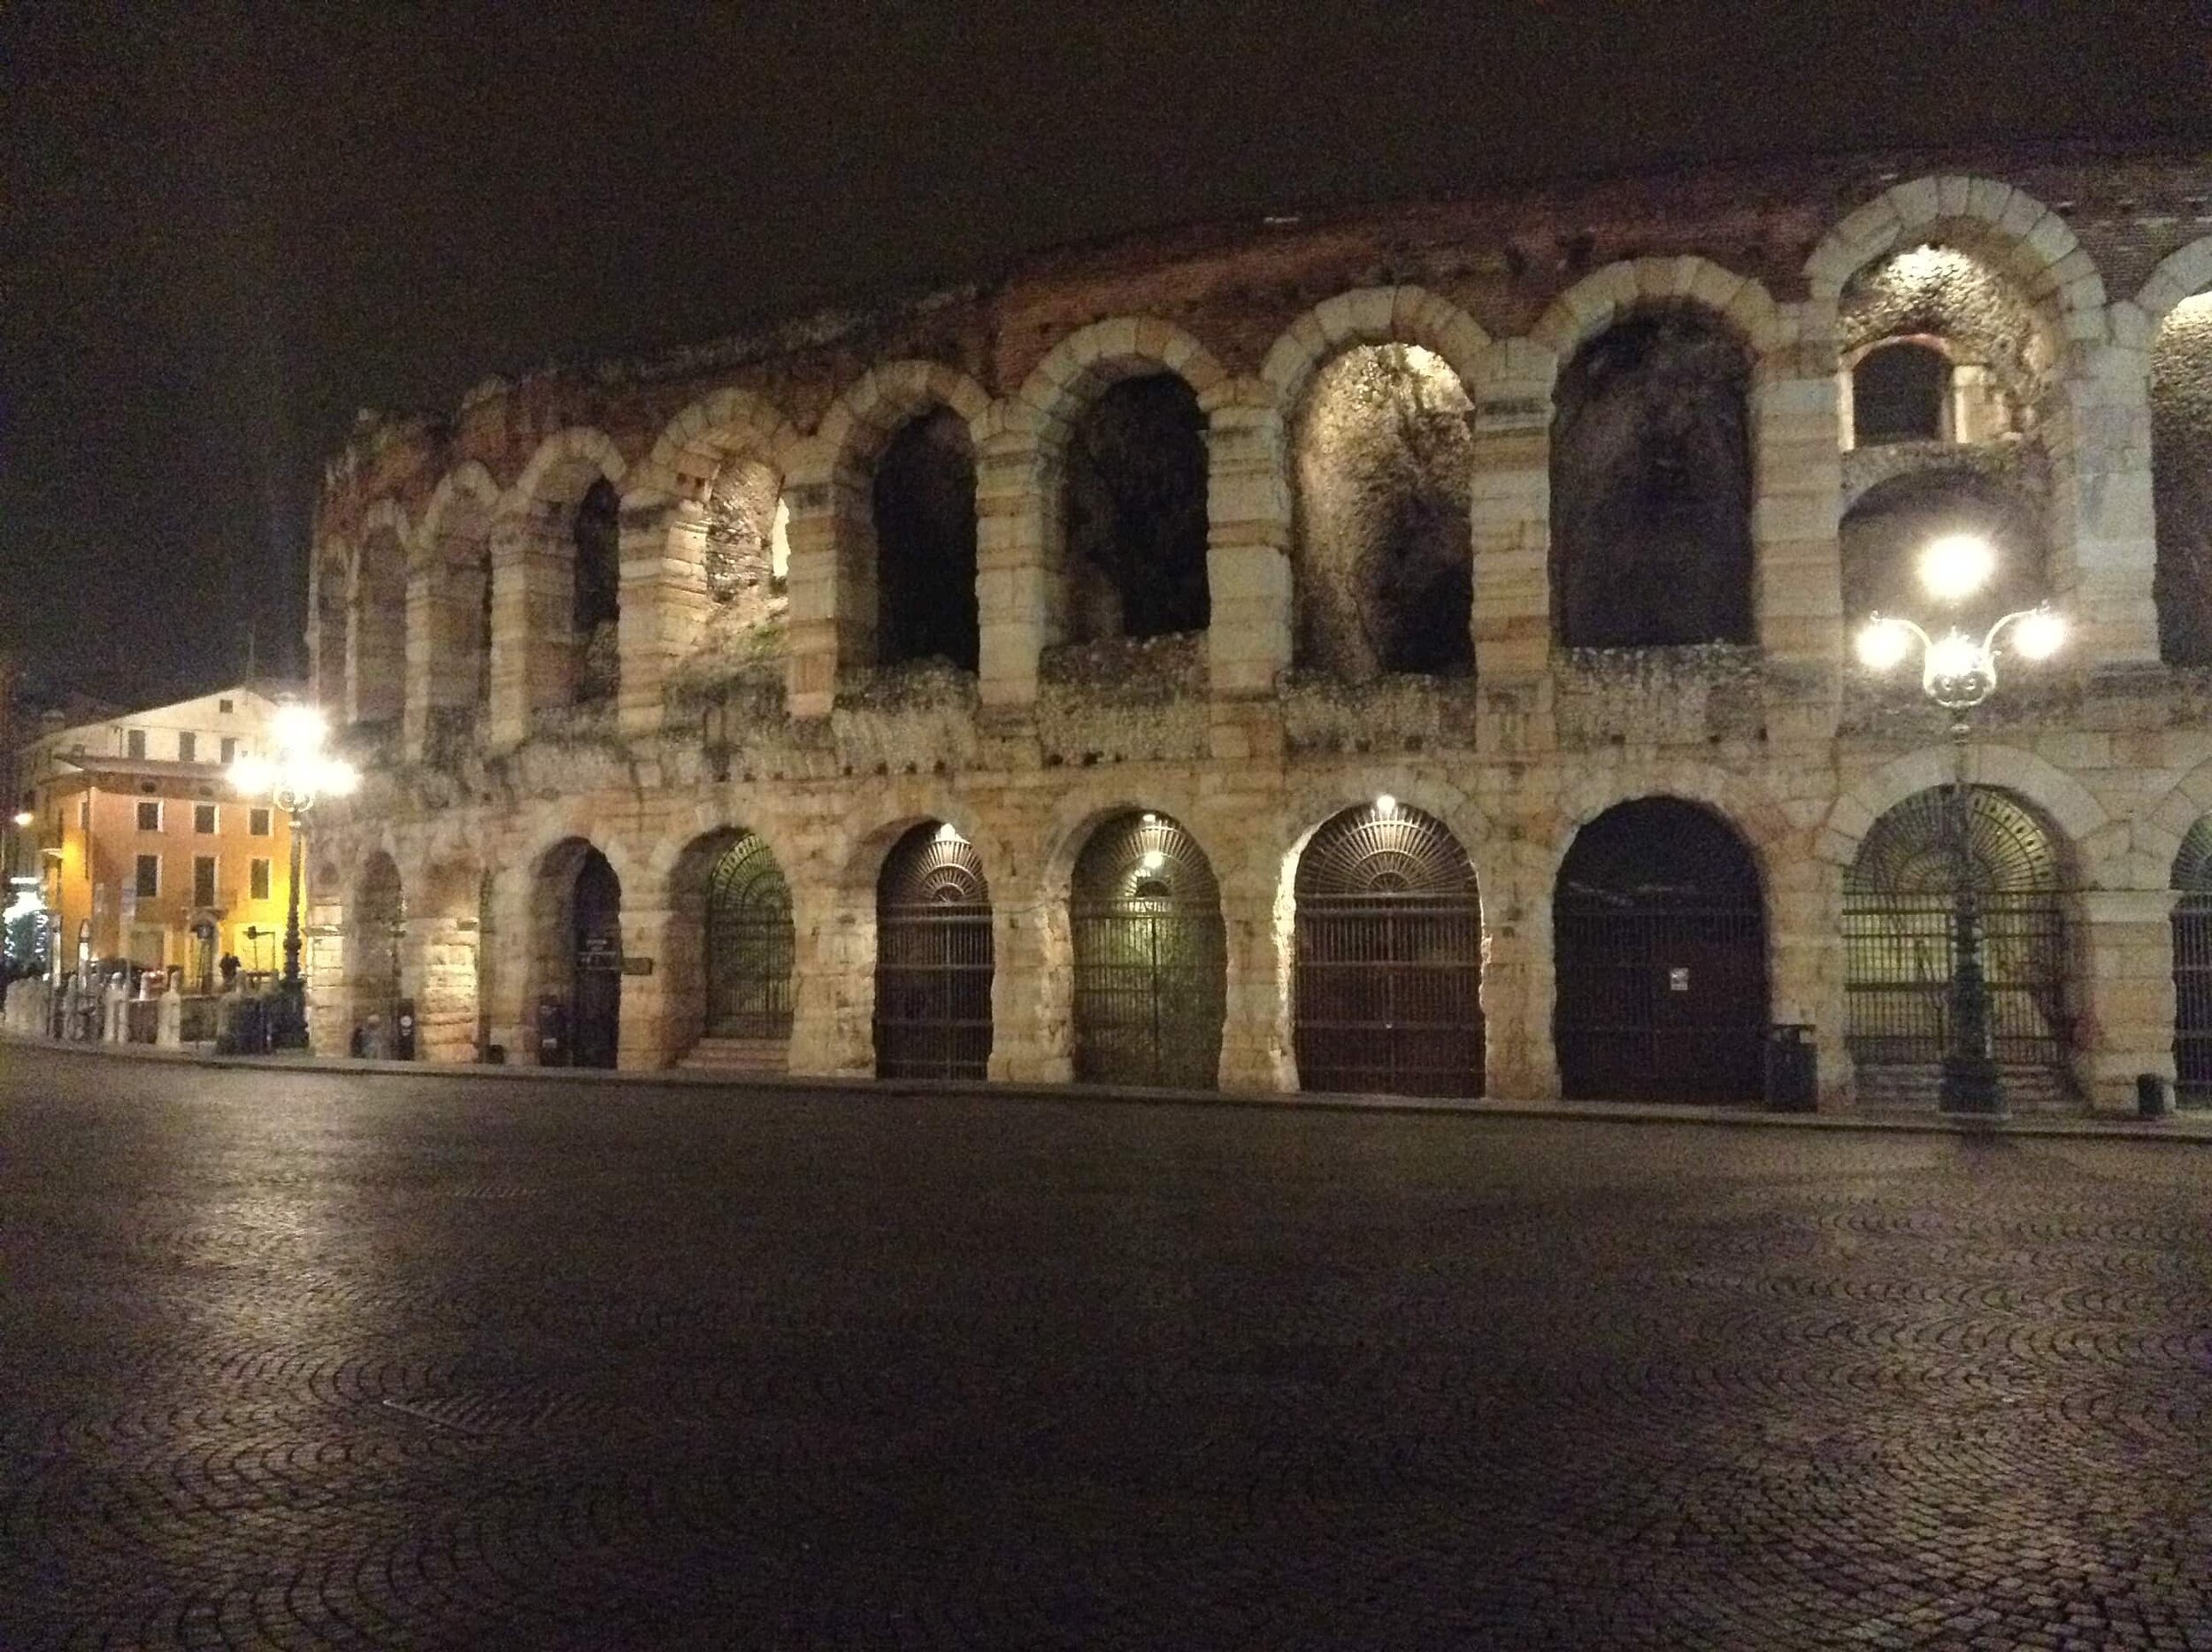 Travel Diaries: Verona, Italy